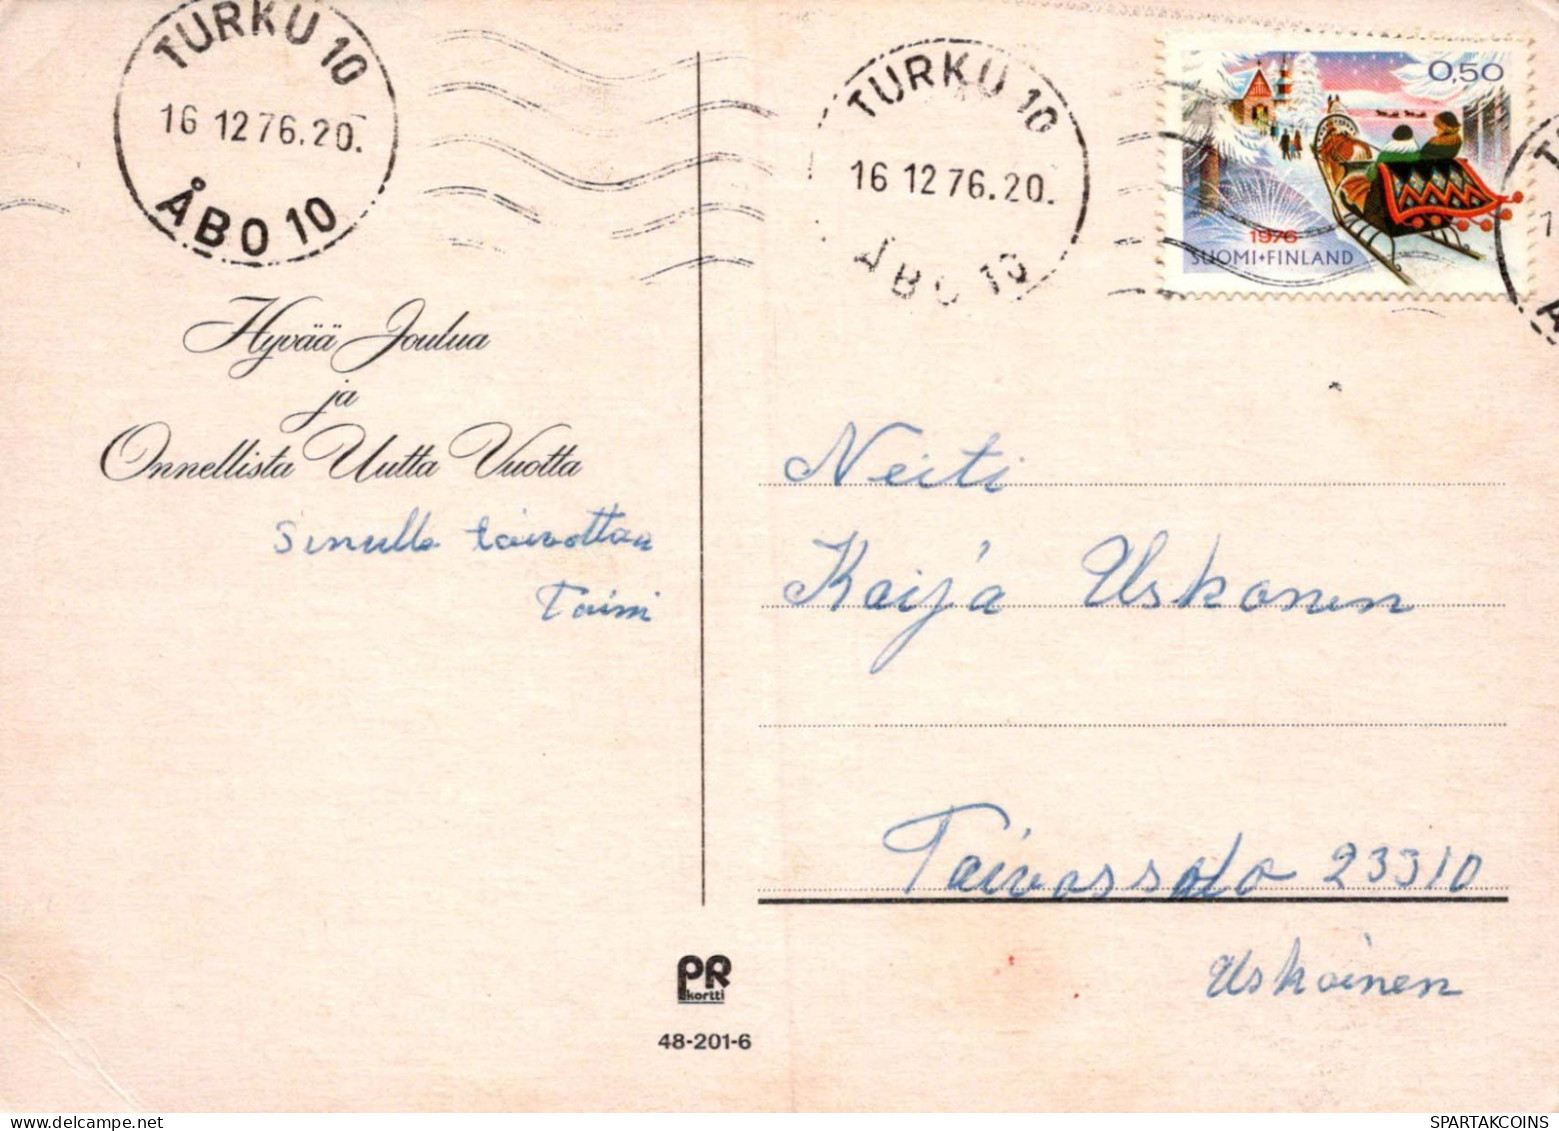 Bonne Année Noël GNOME Vintage Carte Postale CPSM #PAY710.FR - Nouvel An